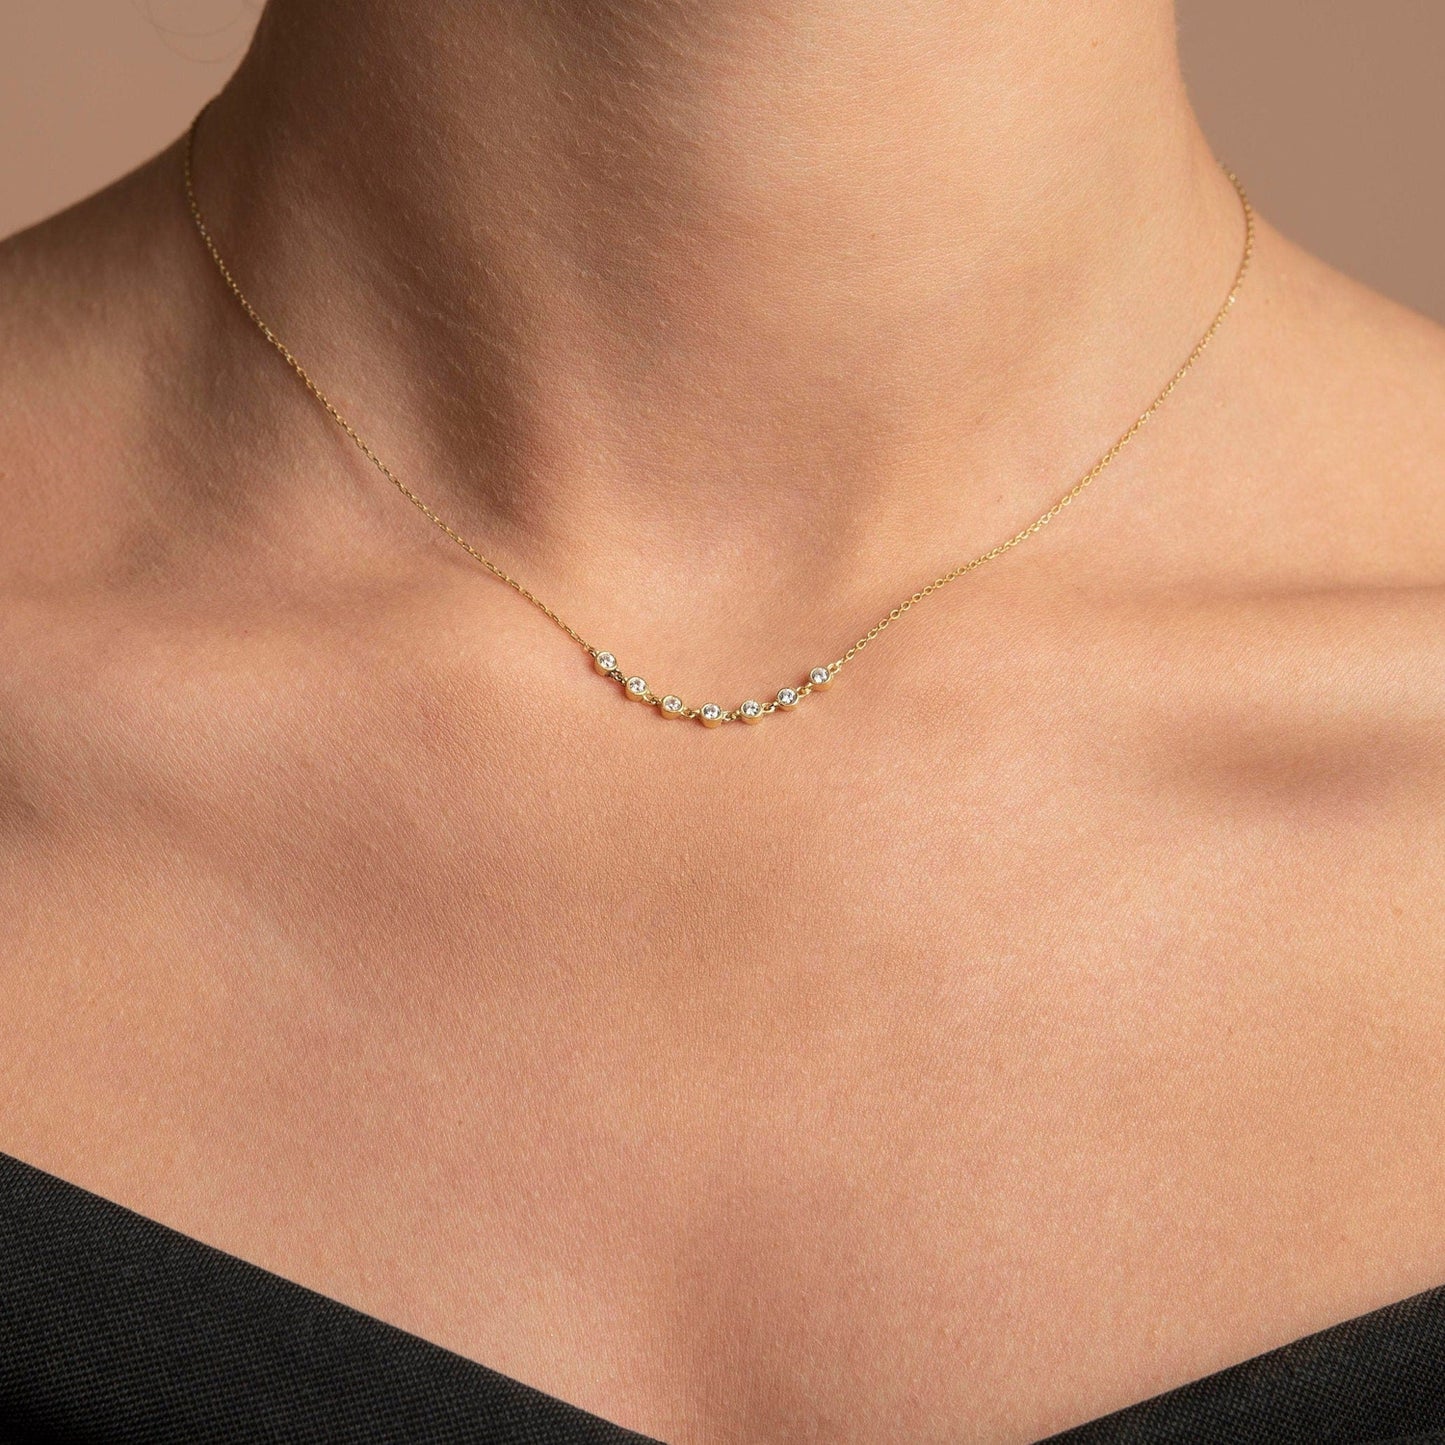 Diamond Bezel Necklace / Dainty Bezel Diamond Necklace / X3 X5 X7 Diamond Linked Necklace / Delicate Diamond Necklace / Christmas Sale